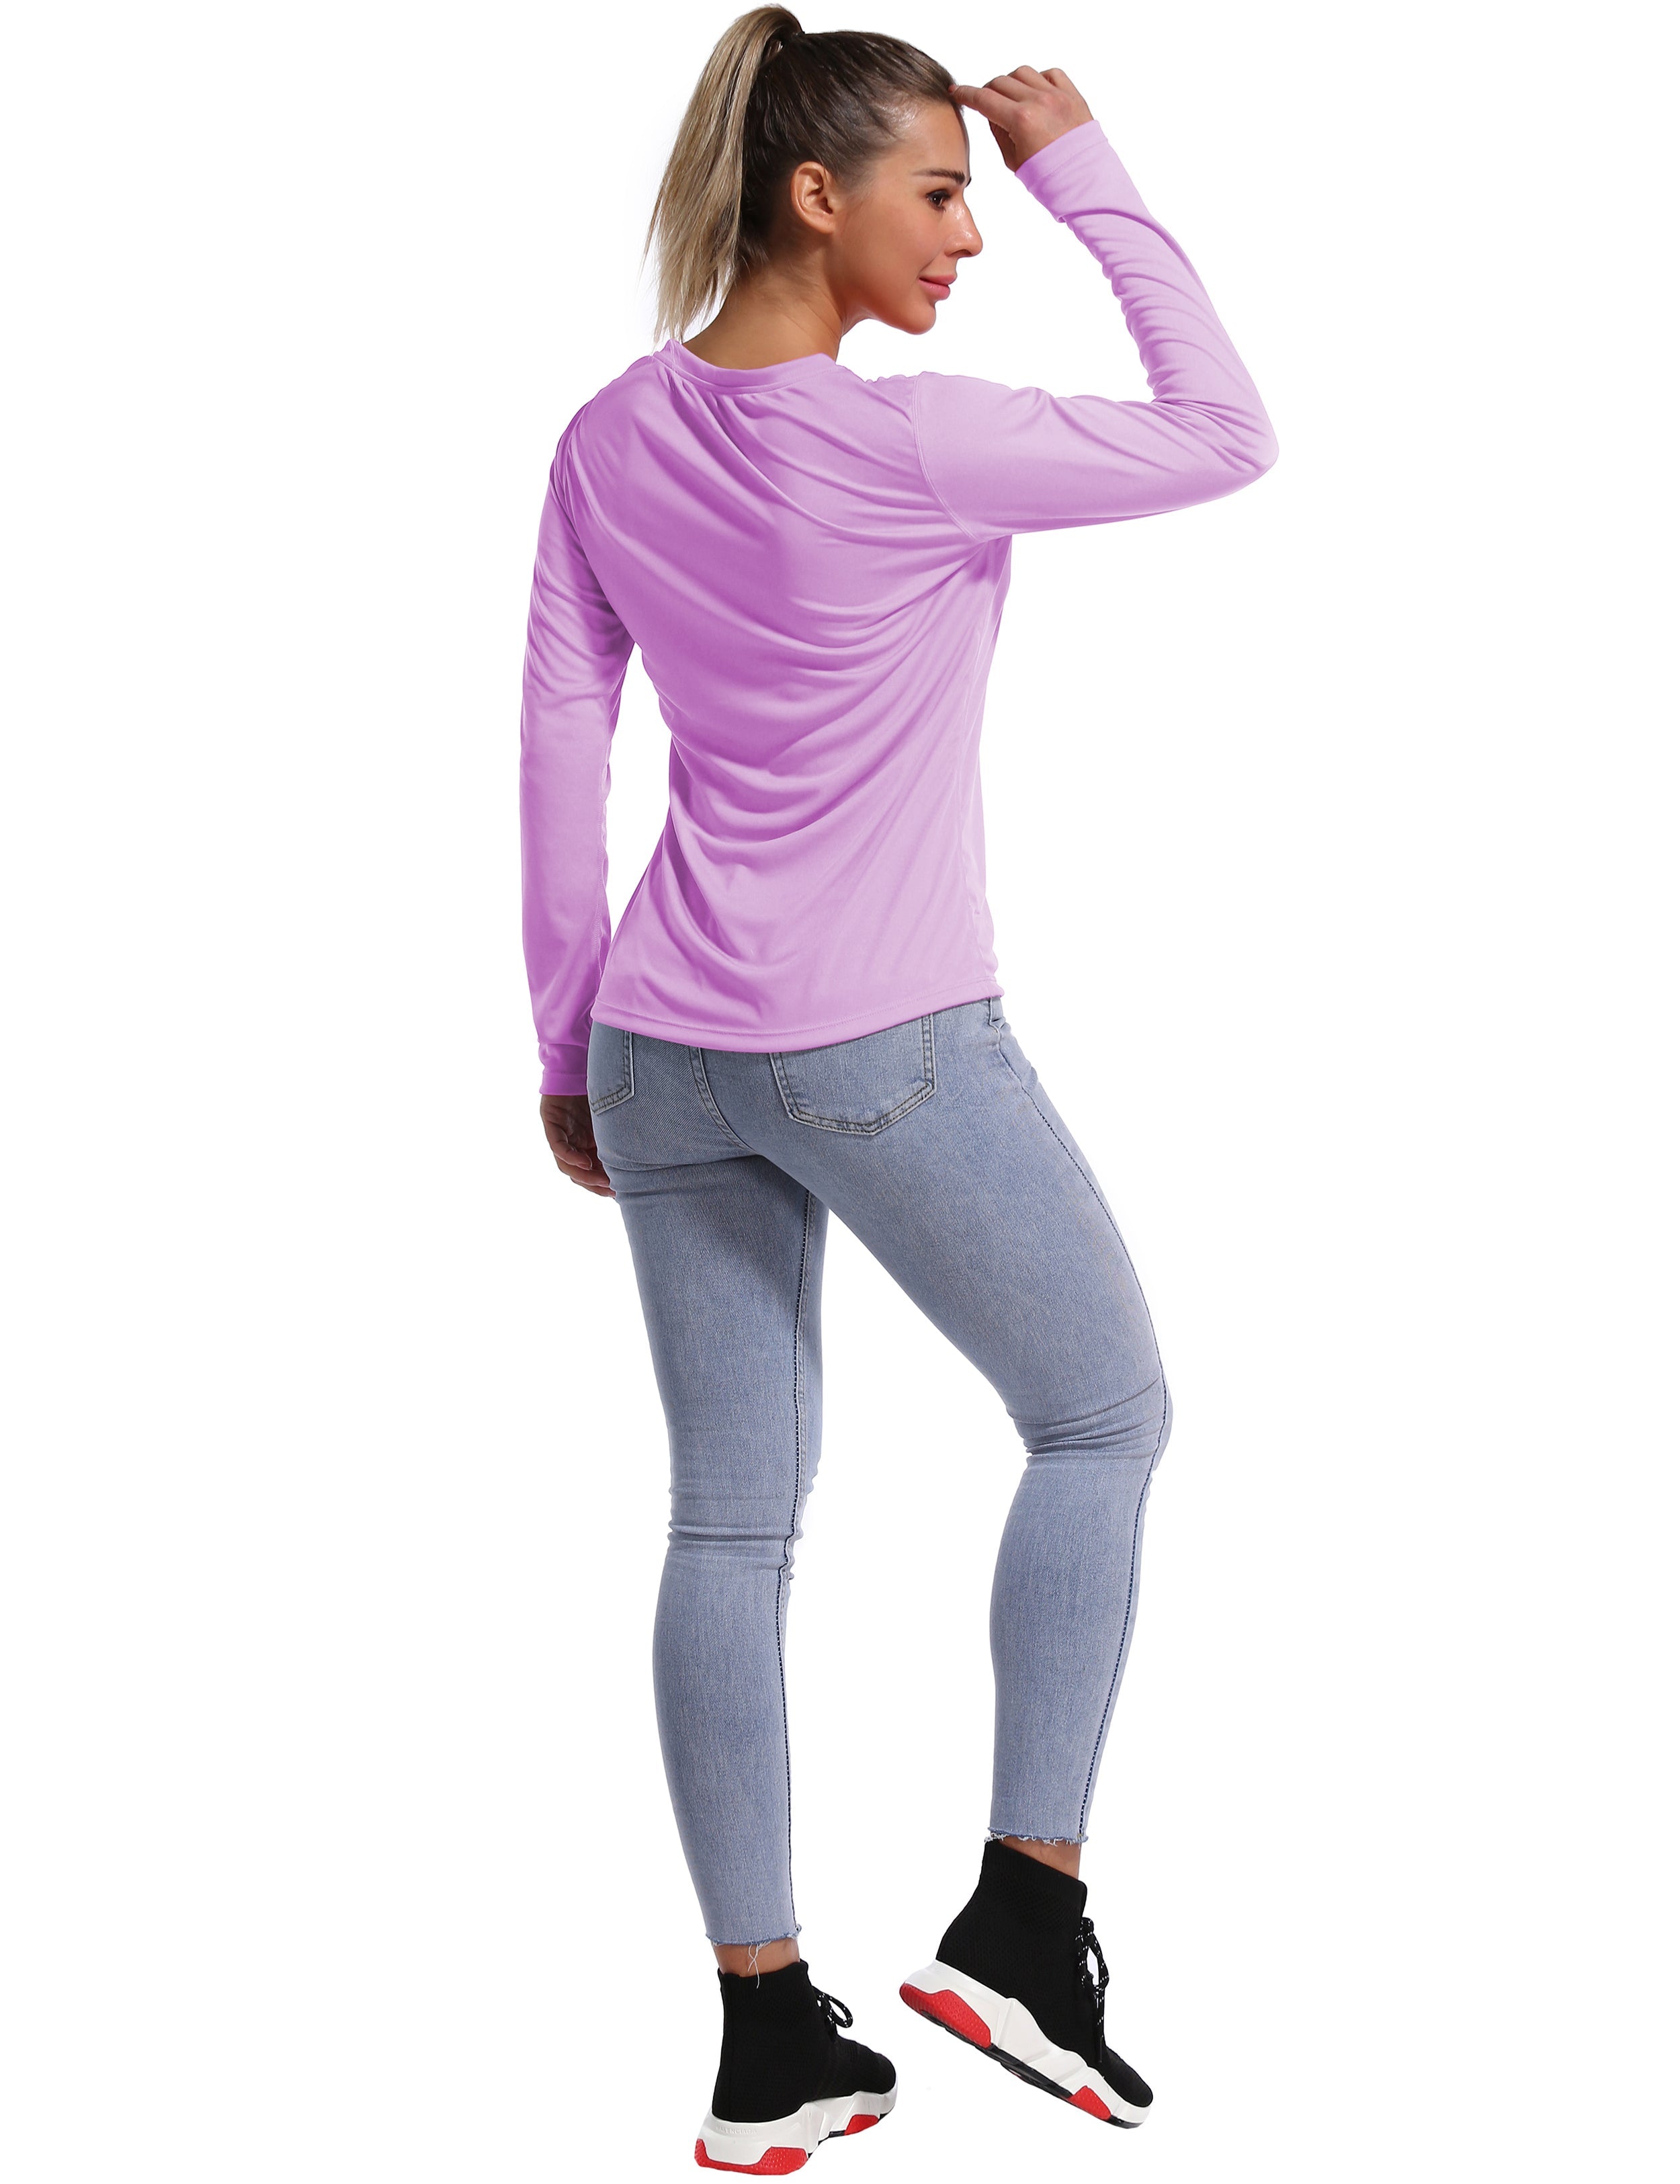 V Neck Long Sleeve Athletic Shirts purple_yoga